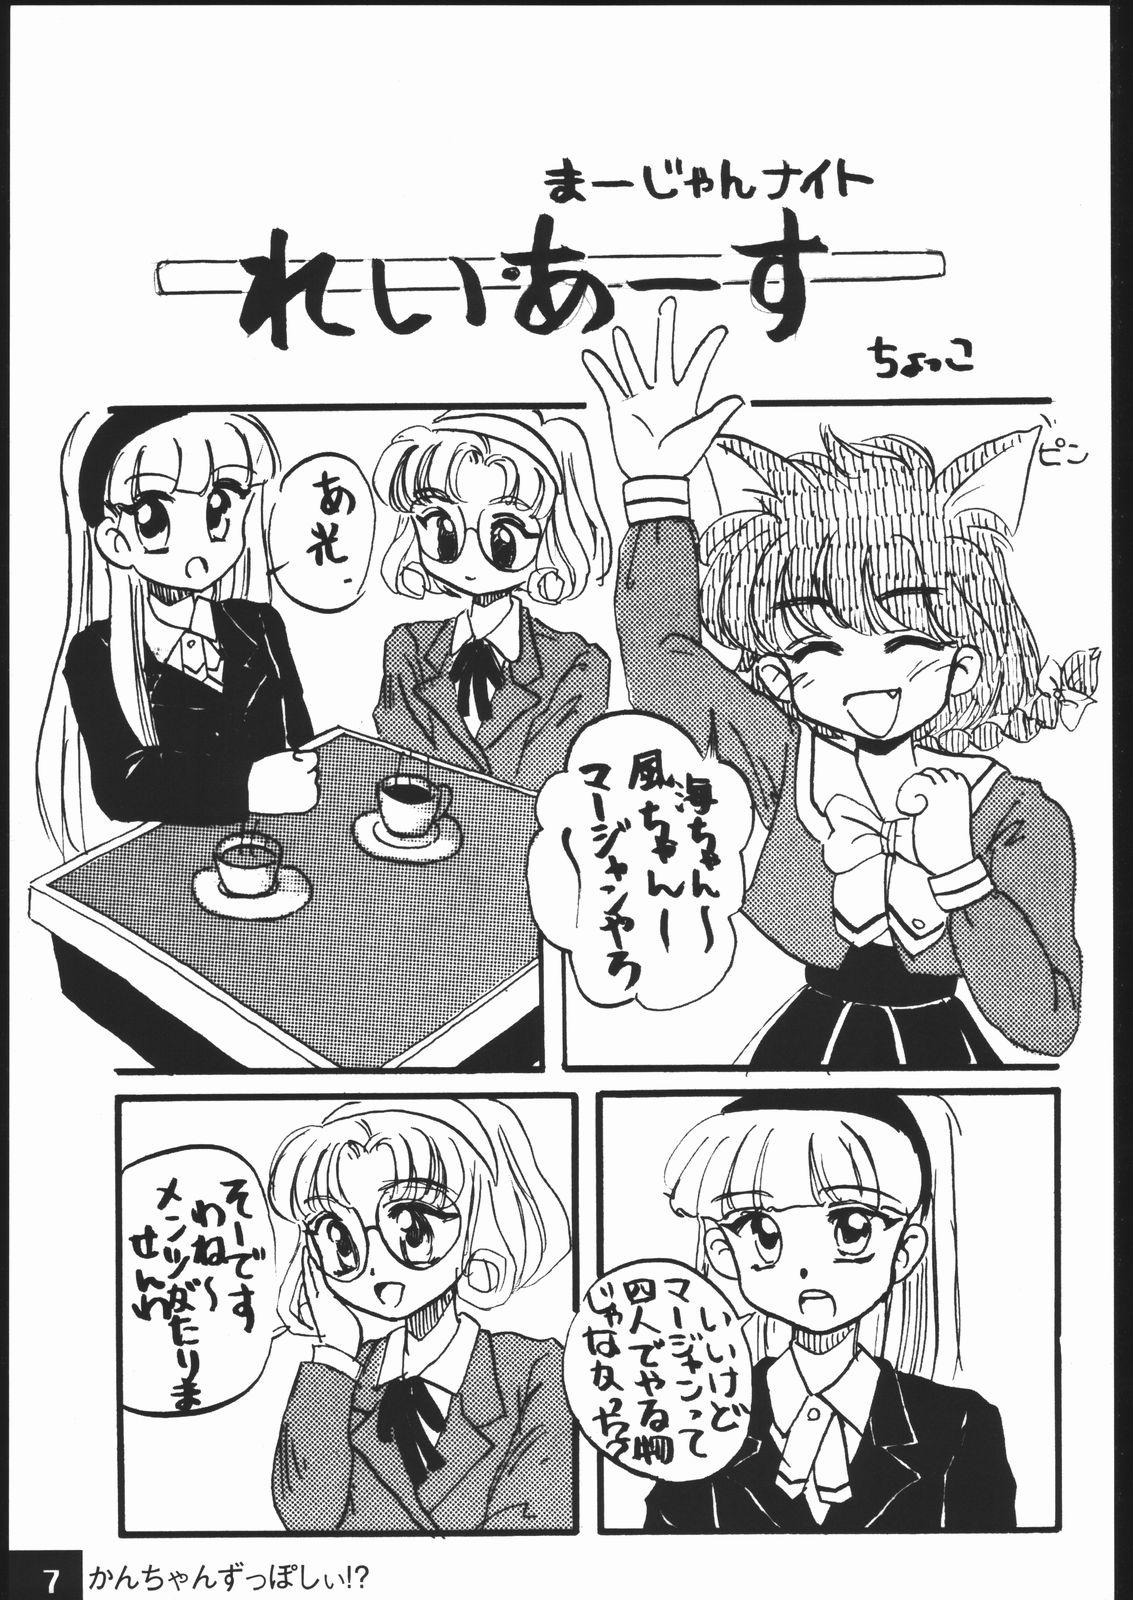 Comendo kantyan zupposhi - Tenchi muyo Wet - Page 6